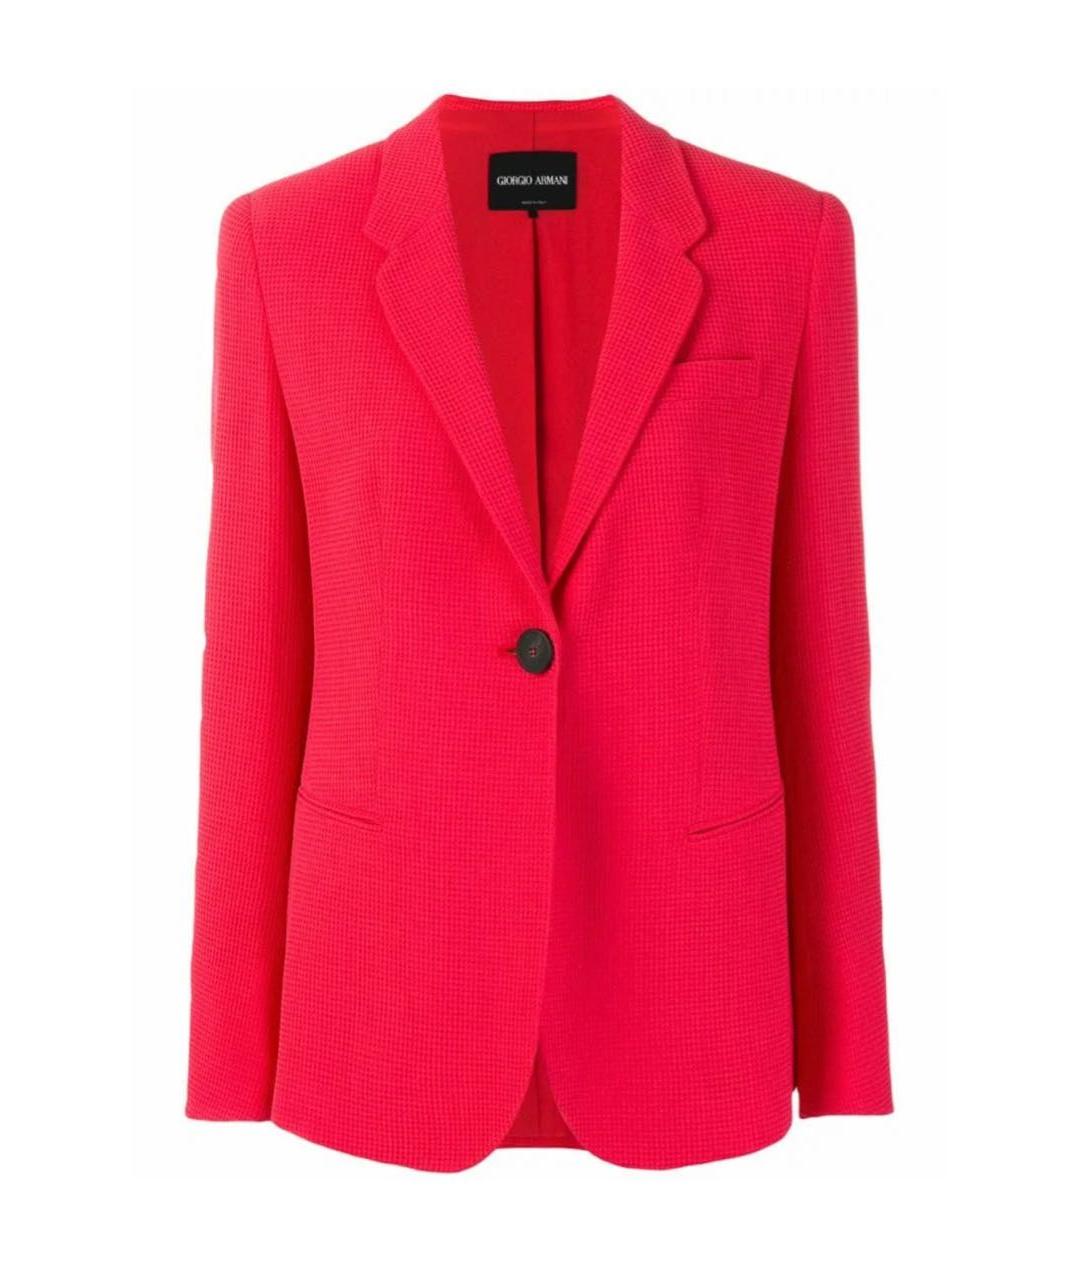 GIORGIO ARMANI Красный вискозный жакет/пиджак, фото 1